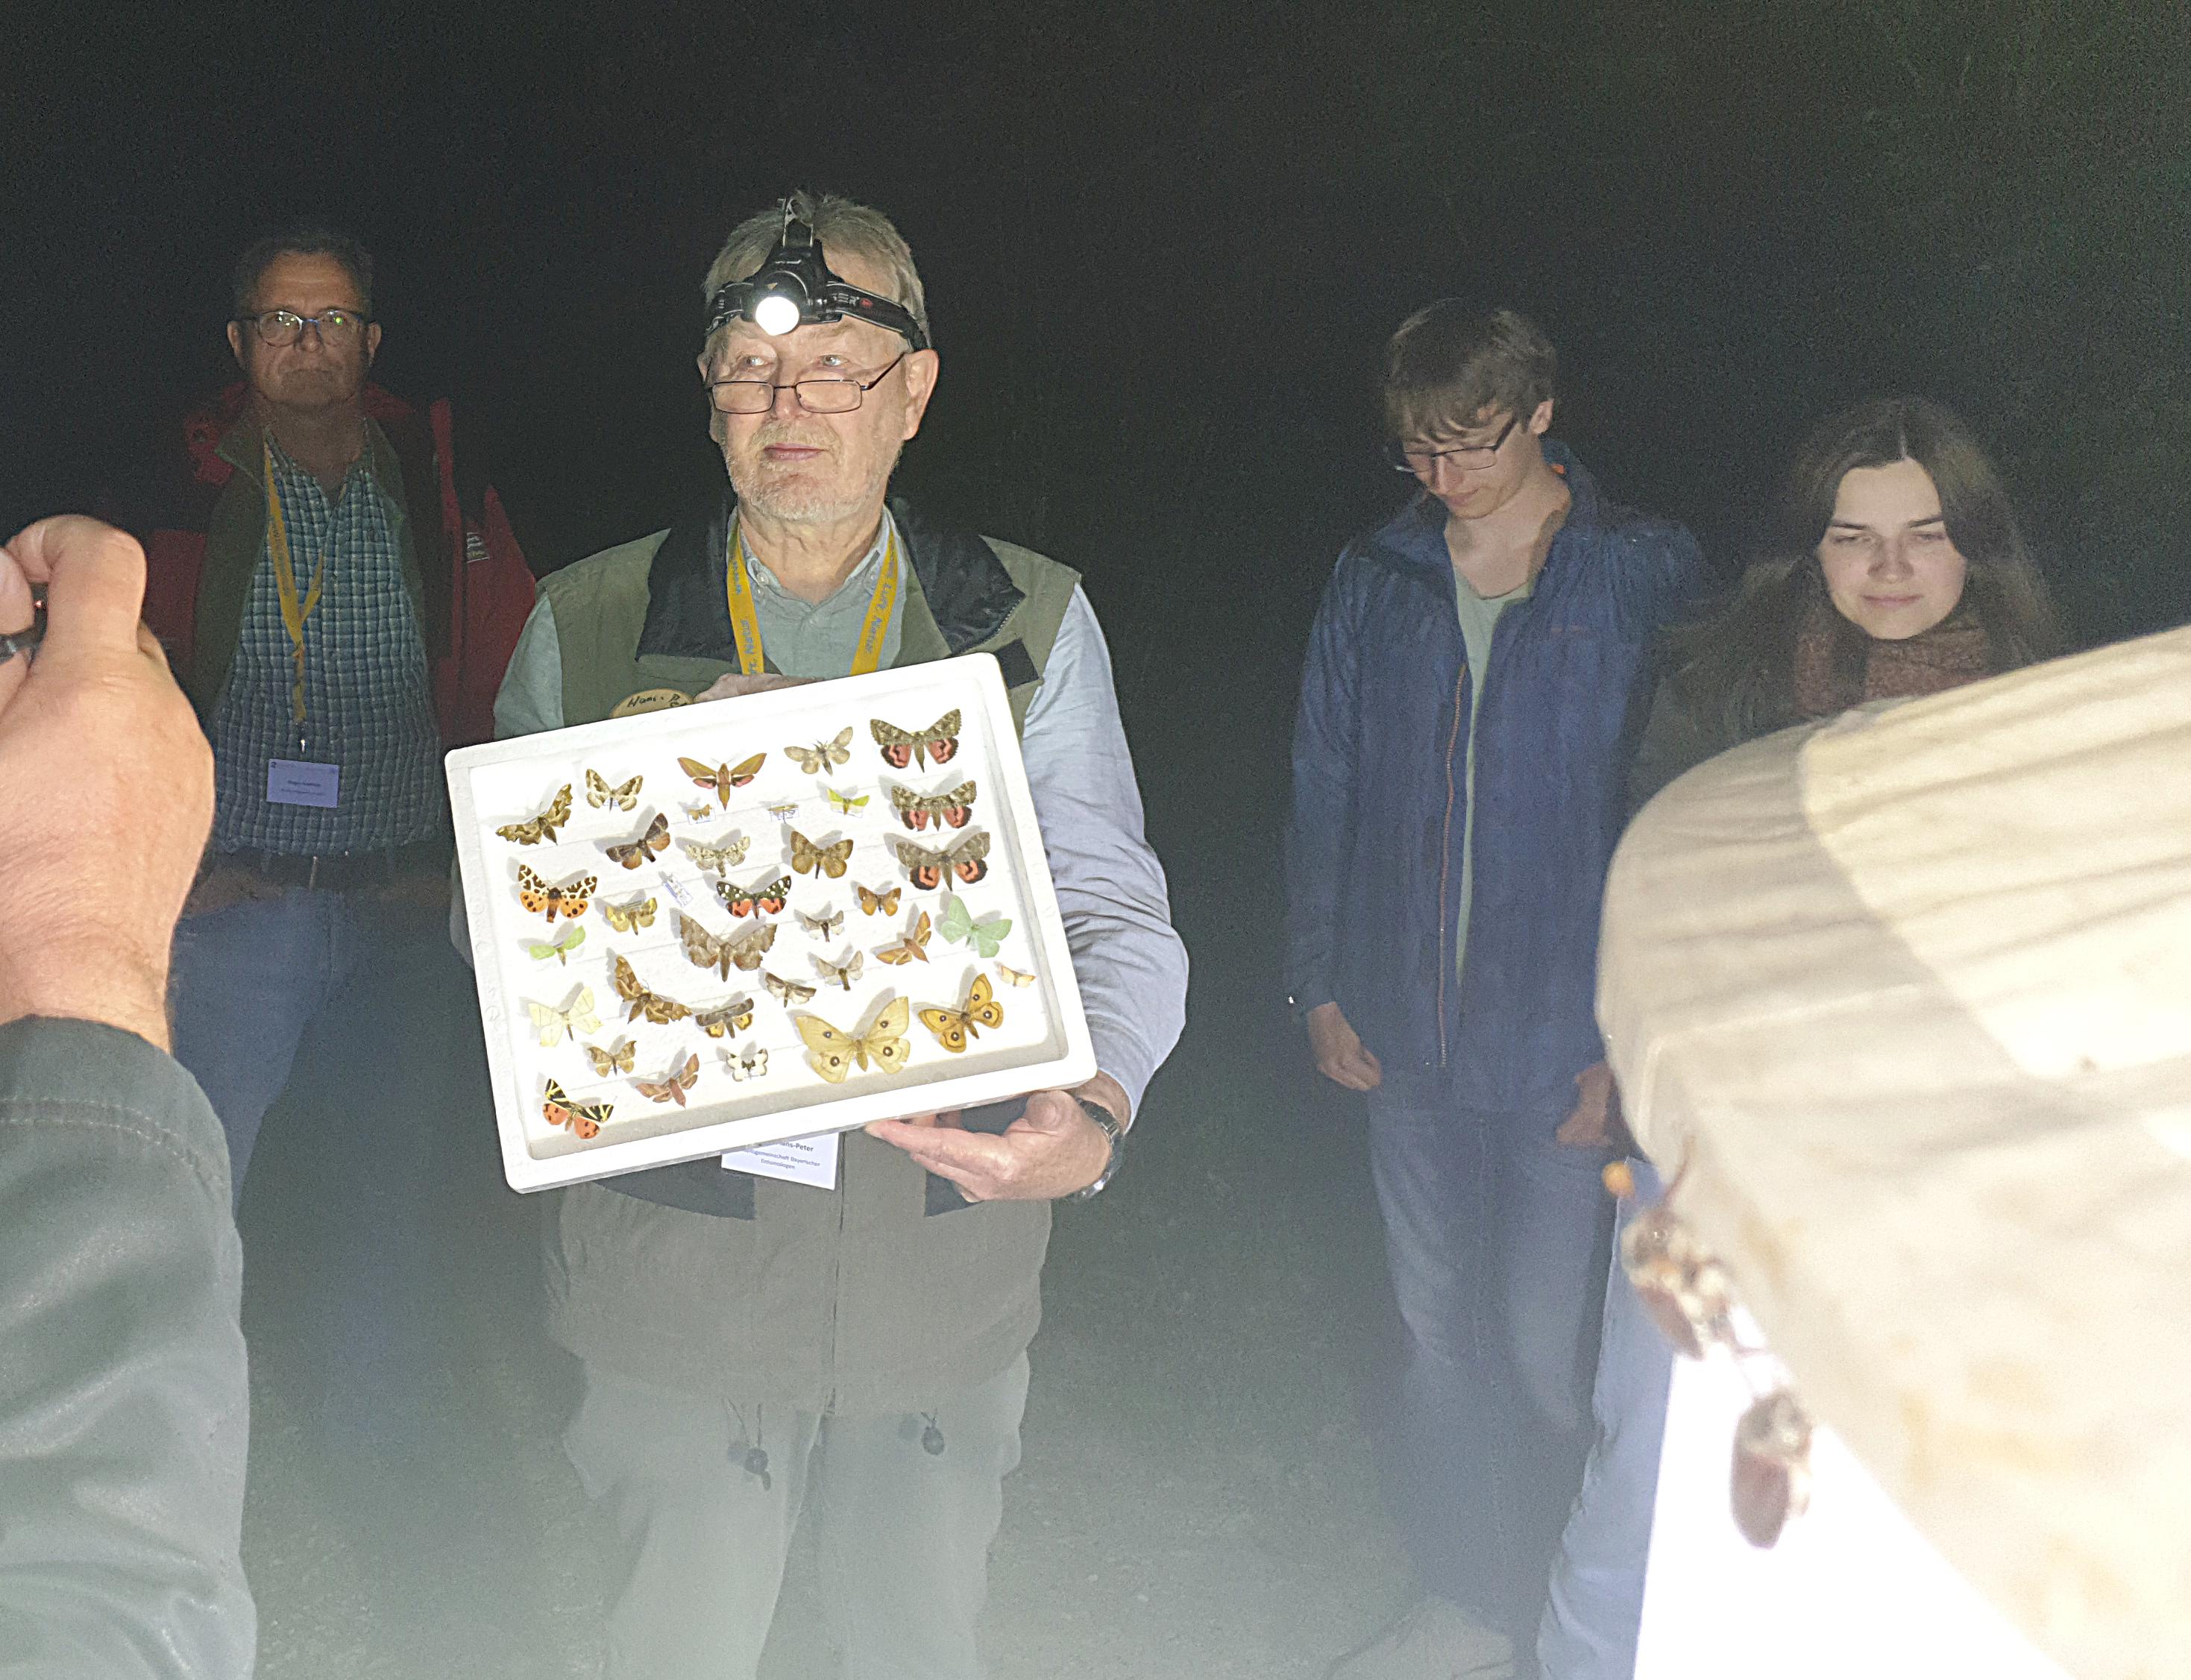 Hans-Peter Schreier von der Arbeitsgemeinschaft Bayerischer Entomologen demonstriert die Vielfalt von Nachtfaltern beim Lichtfang